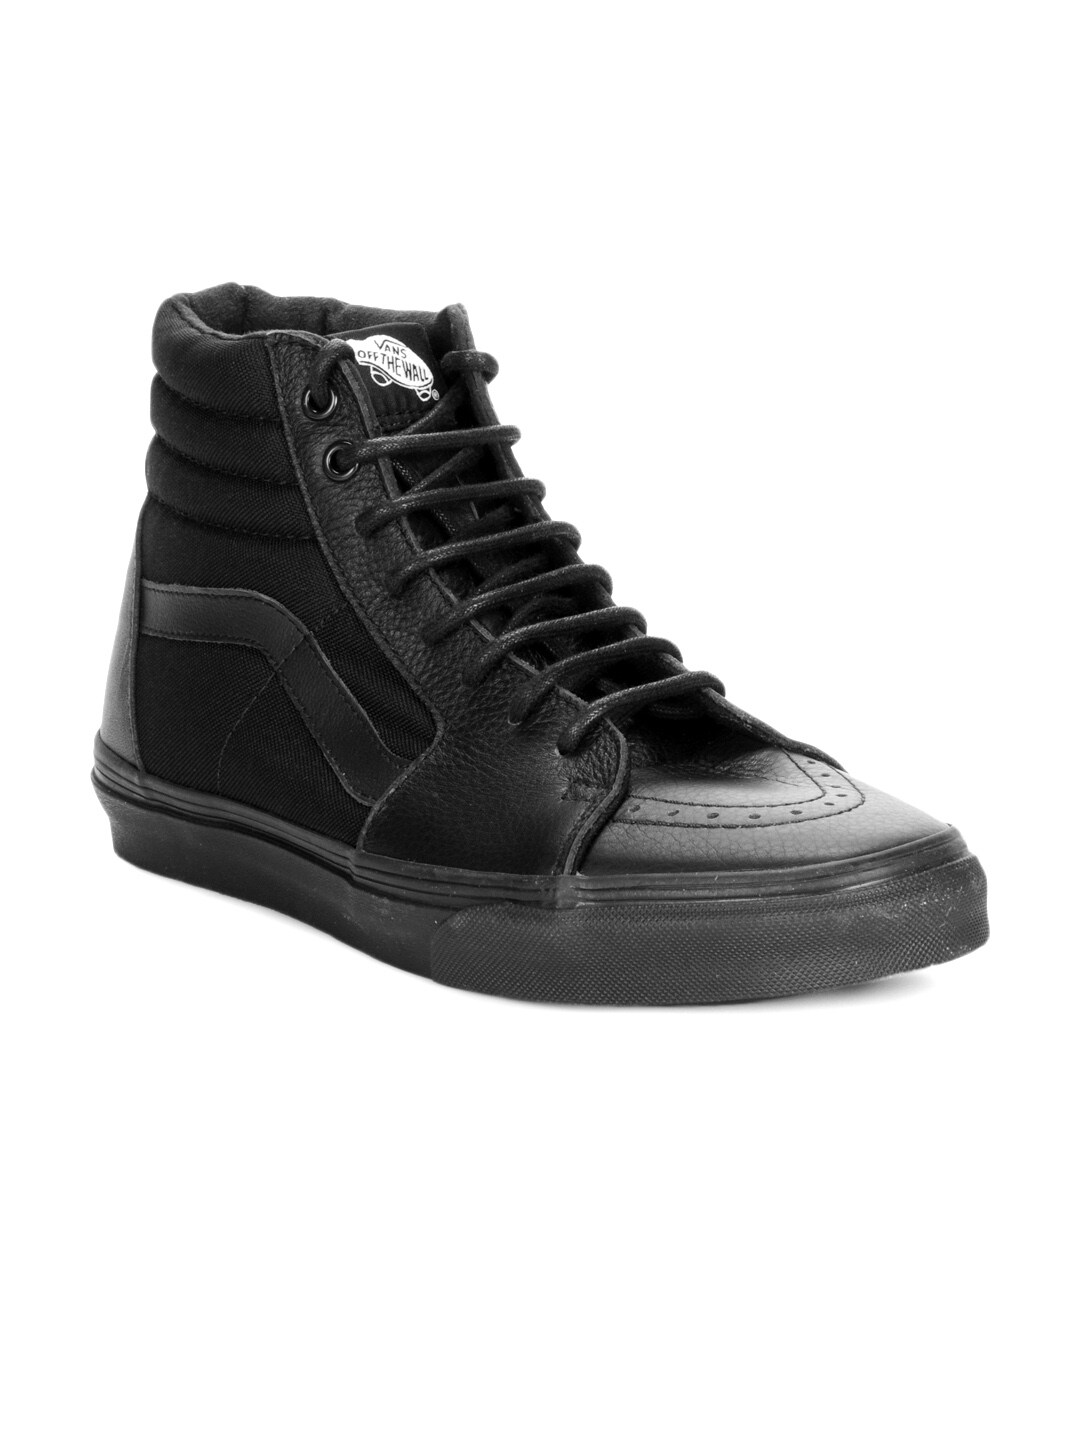 Vans Men Black Sk8-Hi Shoes